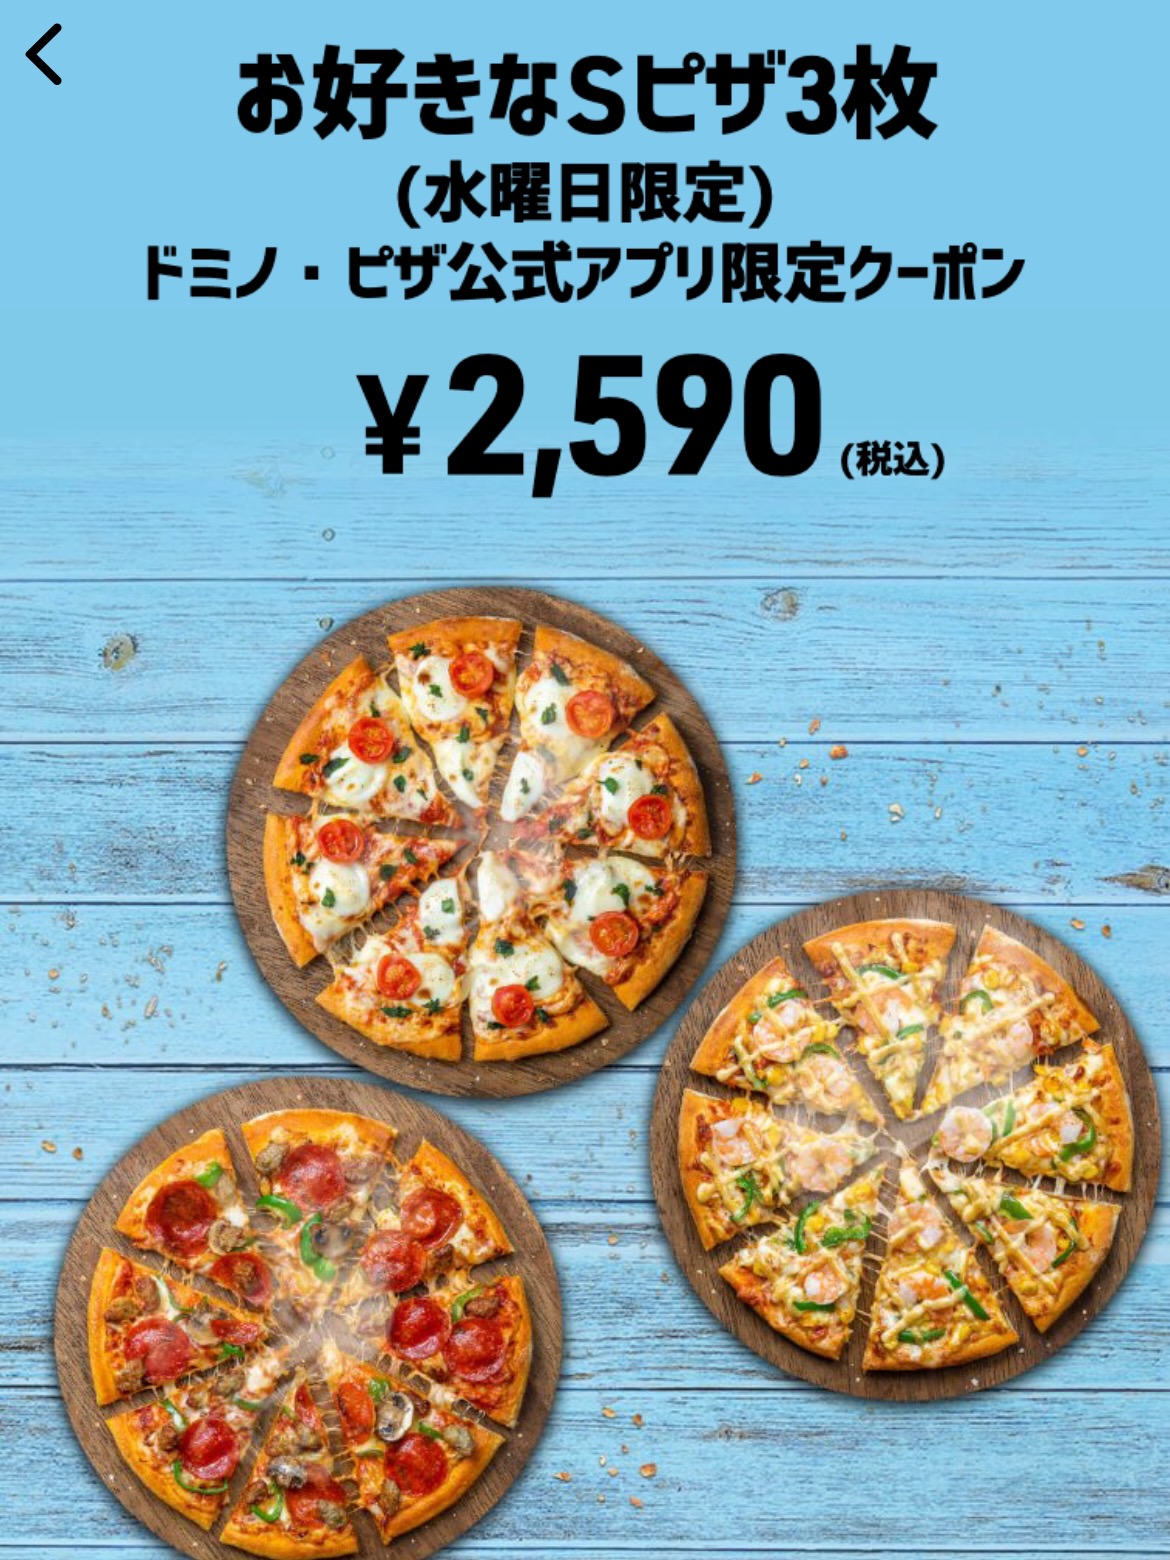 お好きなSピザ3枚 ドミノ・ピザ公式アプリ限定クーポン